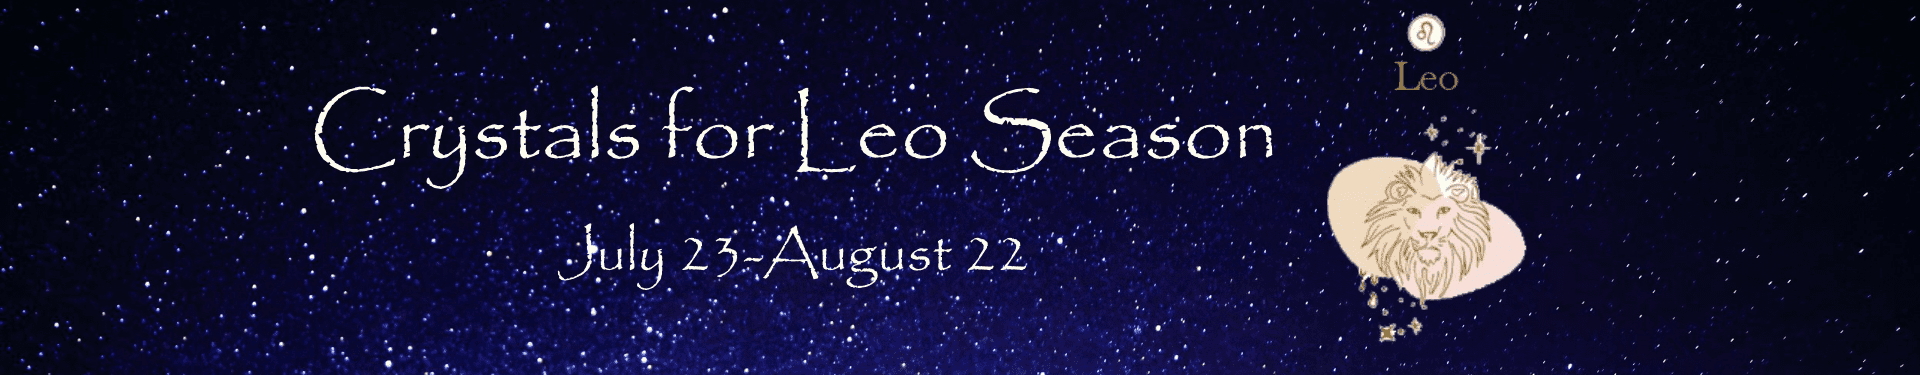 Leo Season Banner